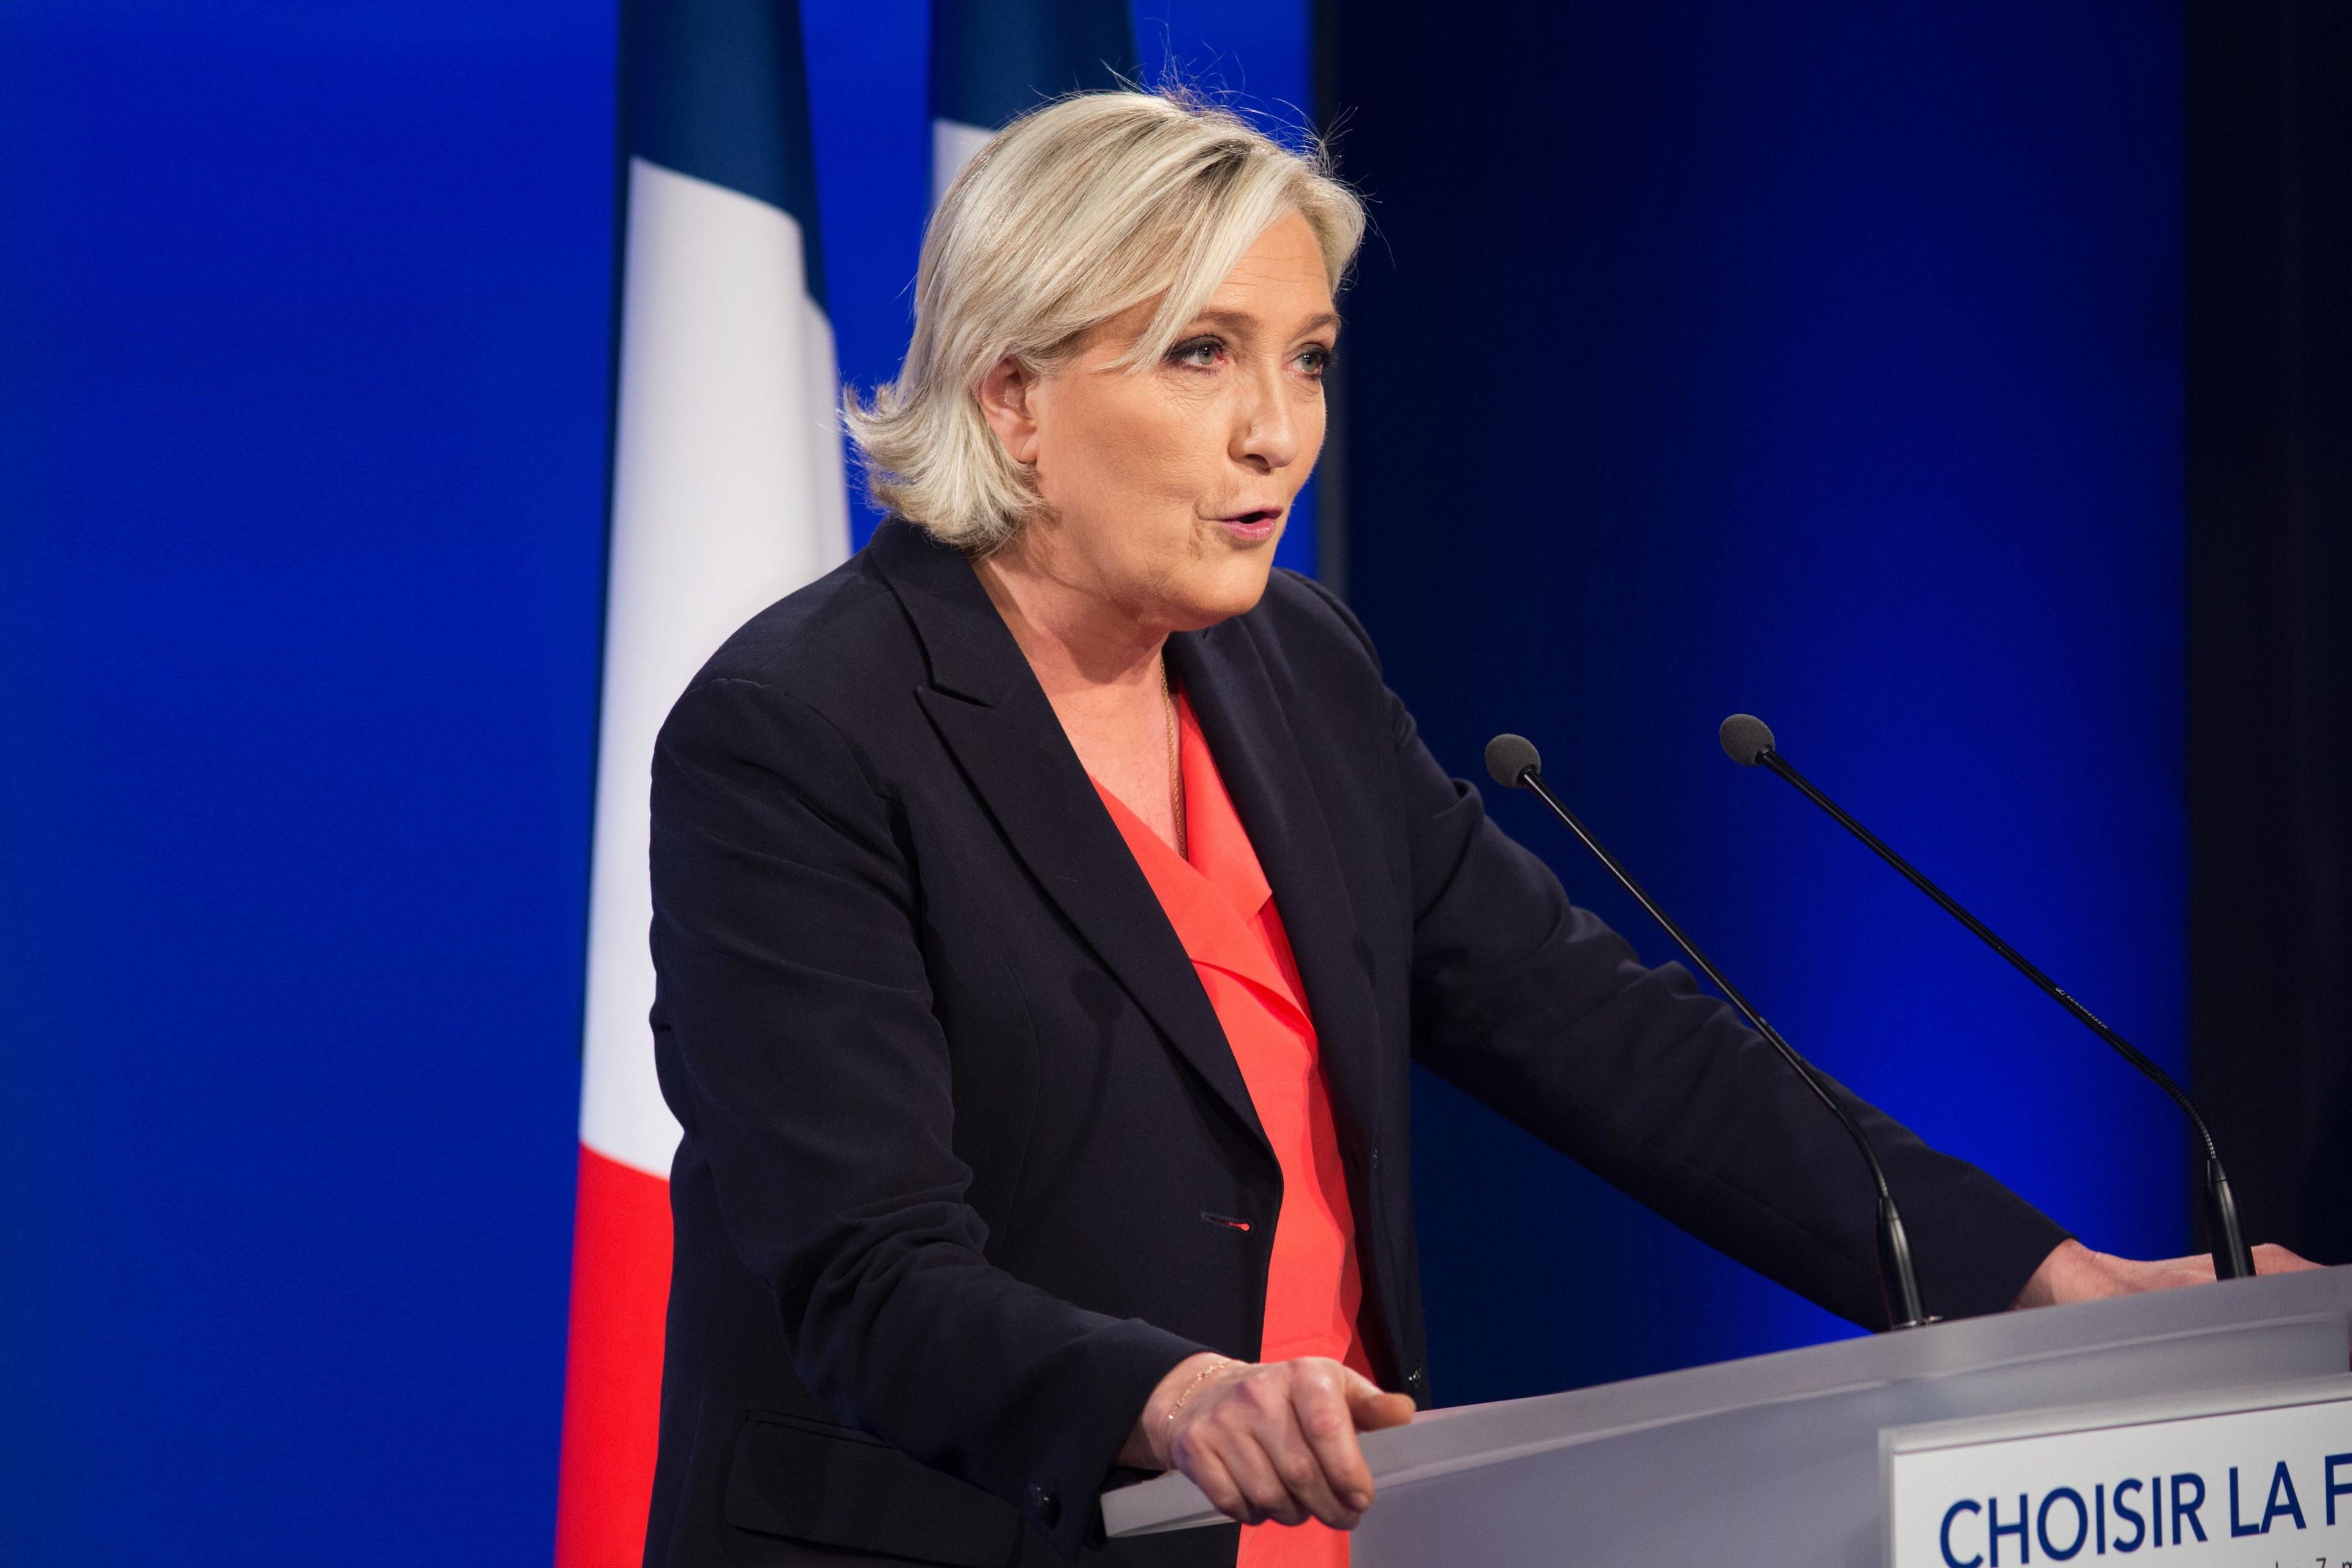 180 dan ortiq nomzod Le Pen partiyasiga qarshi kurash uchun Fransiyadagi saylovlardan chiqdi